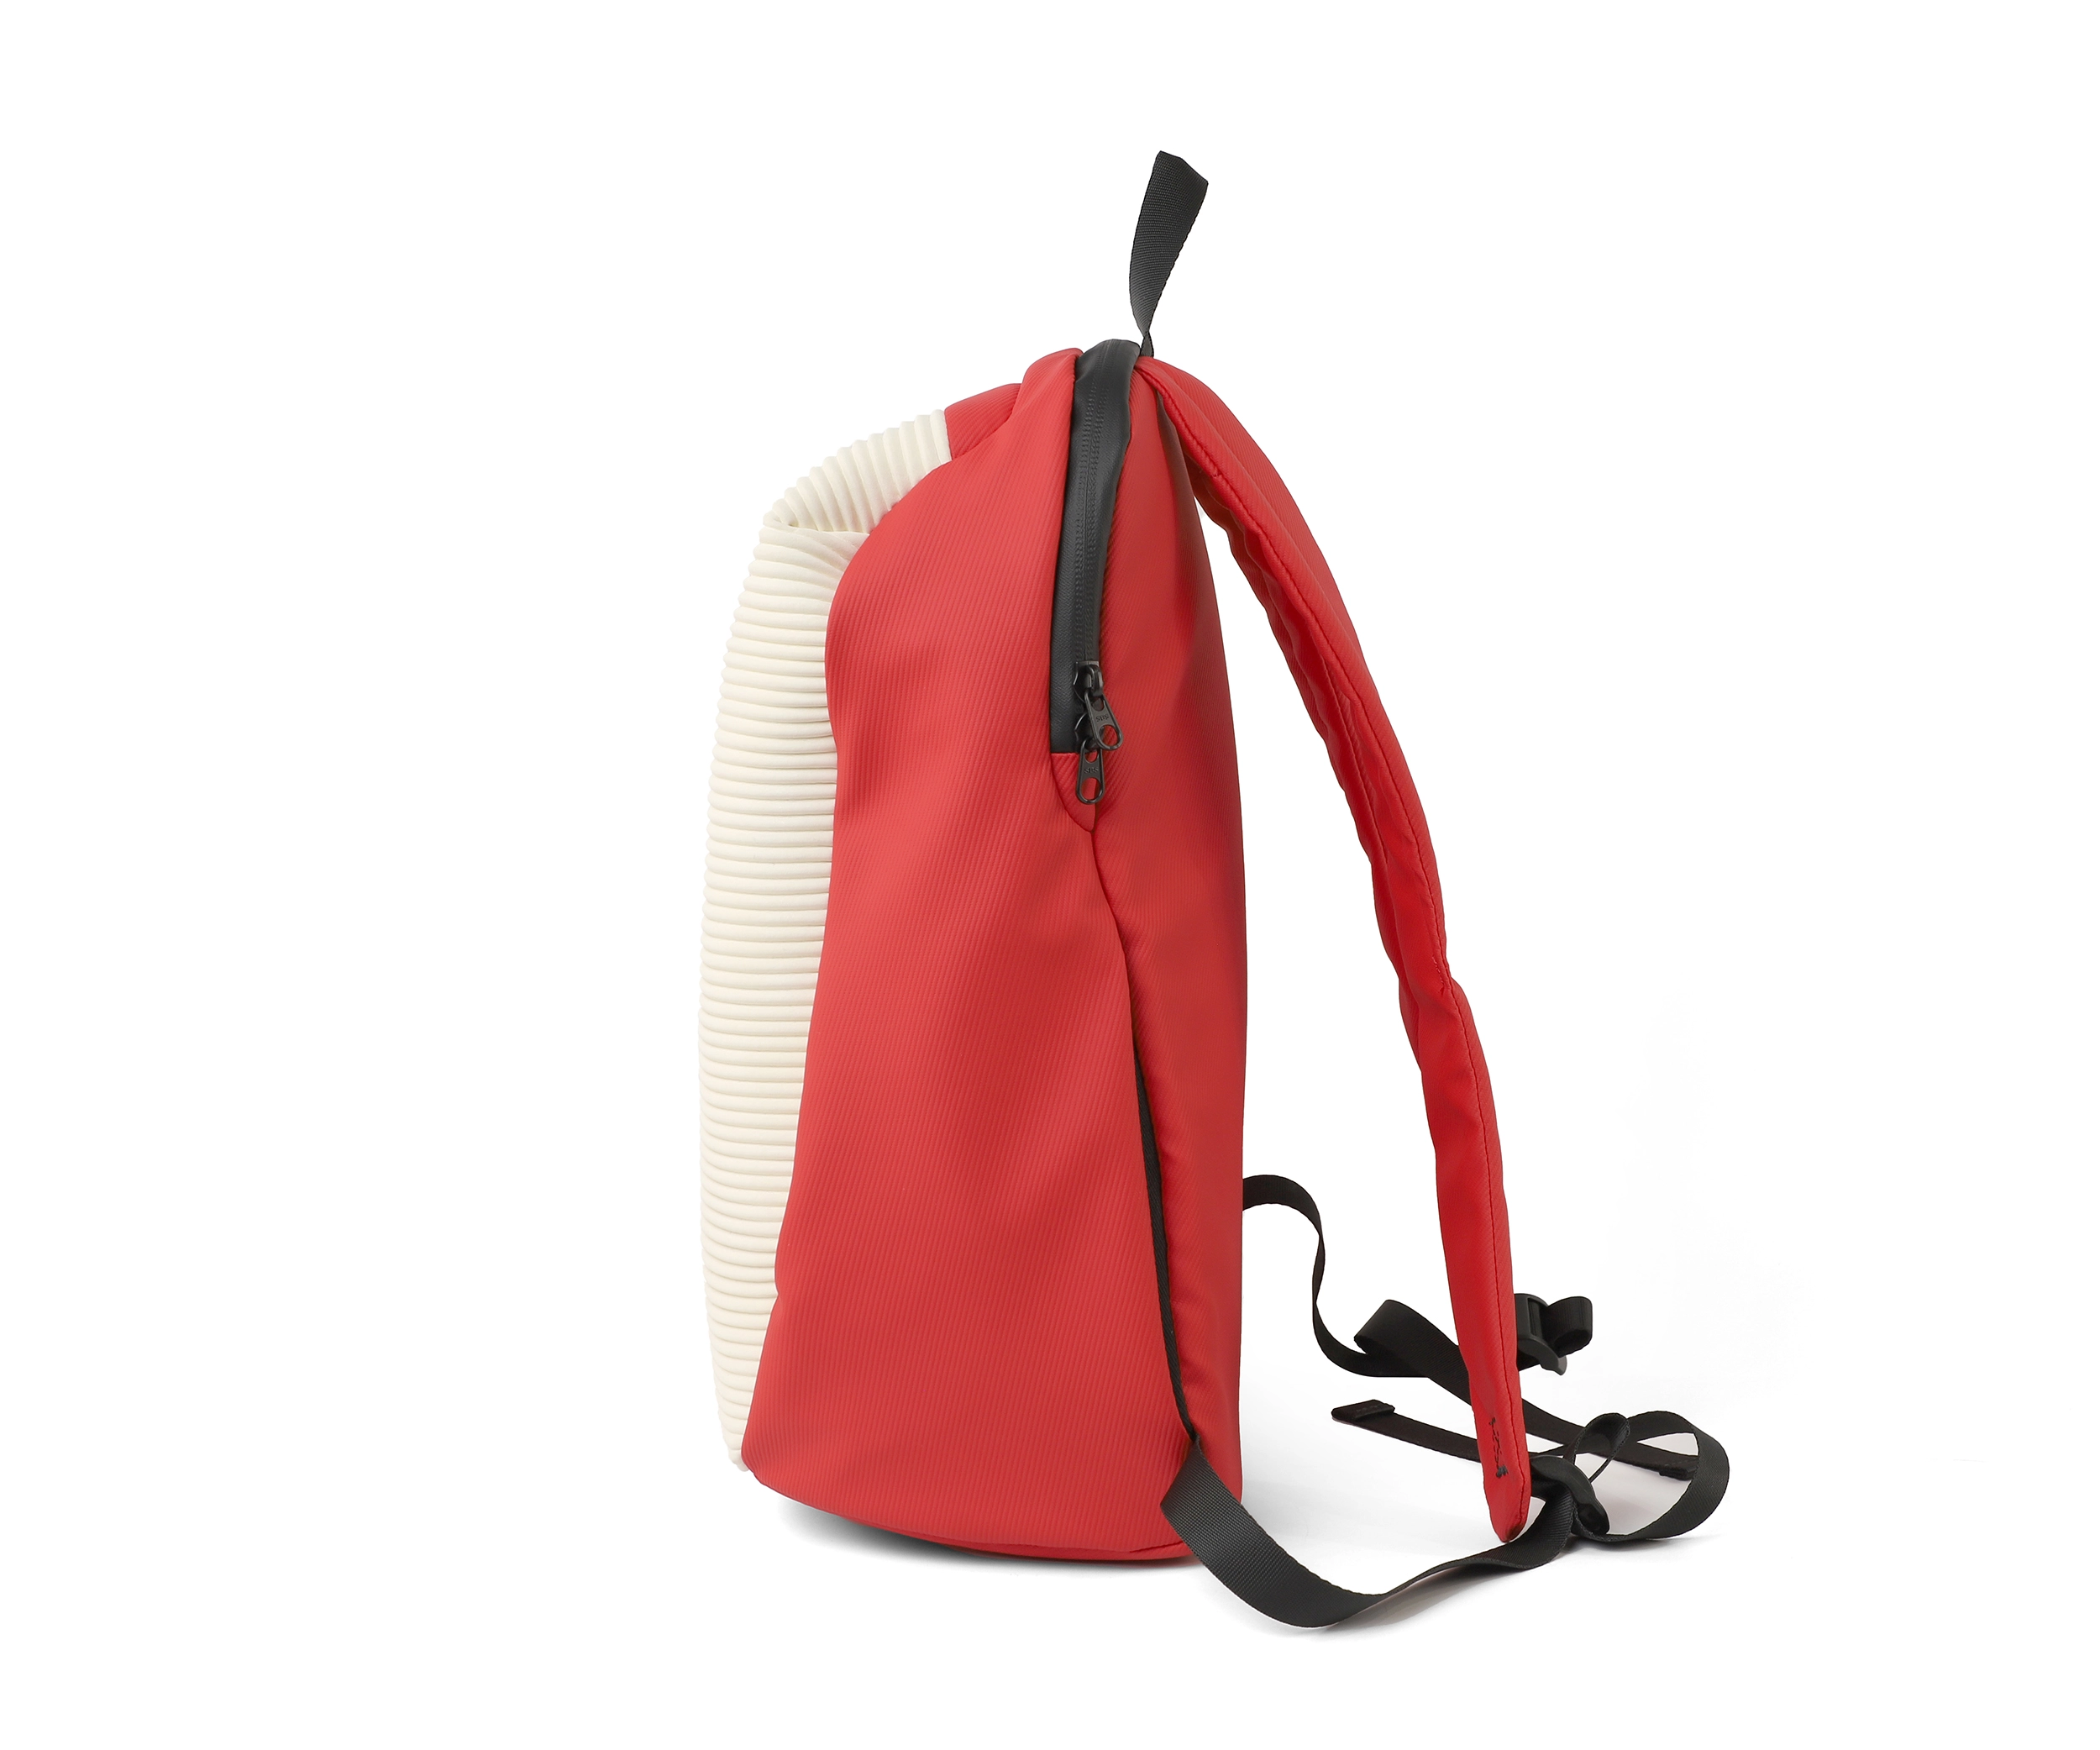 stylish backpack